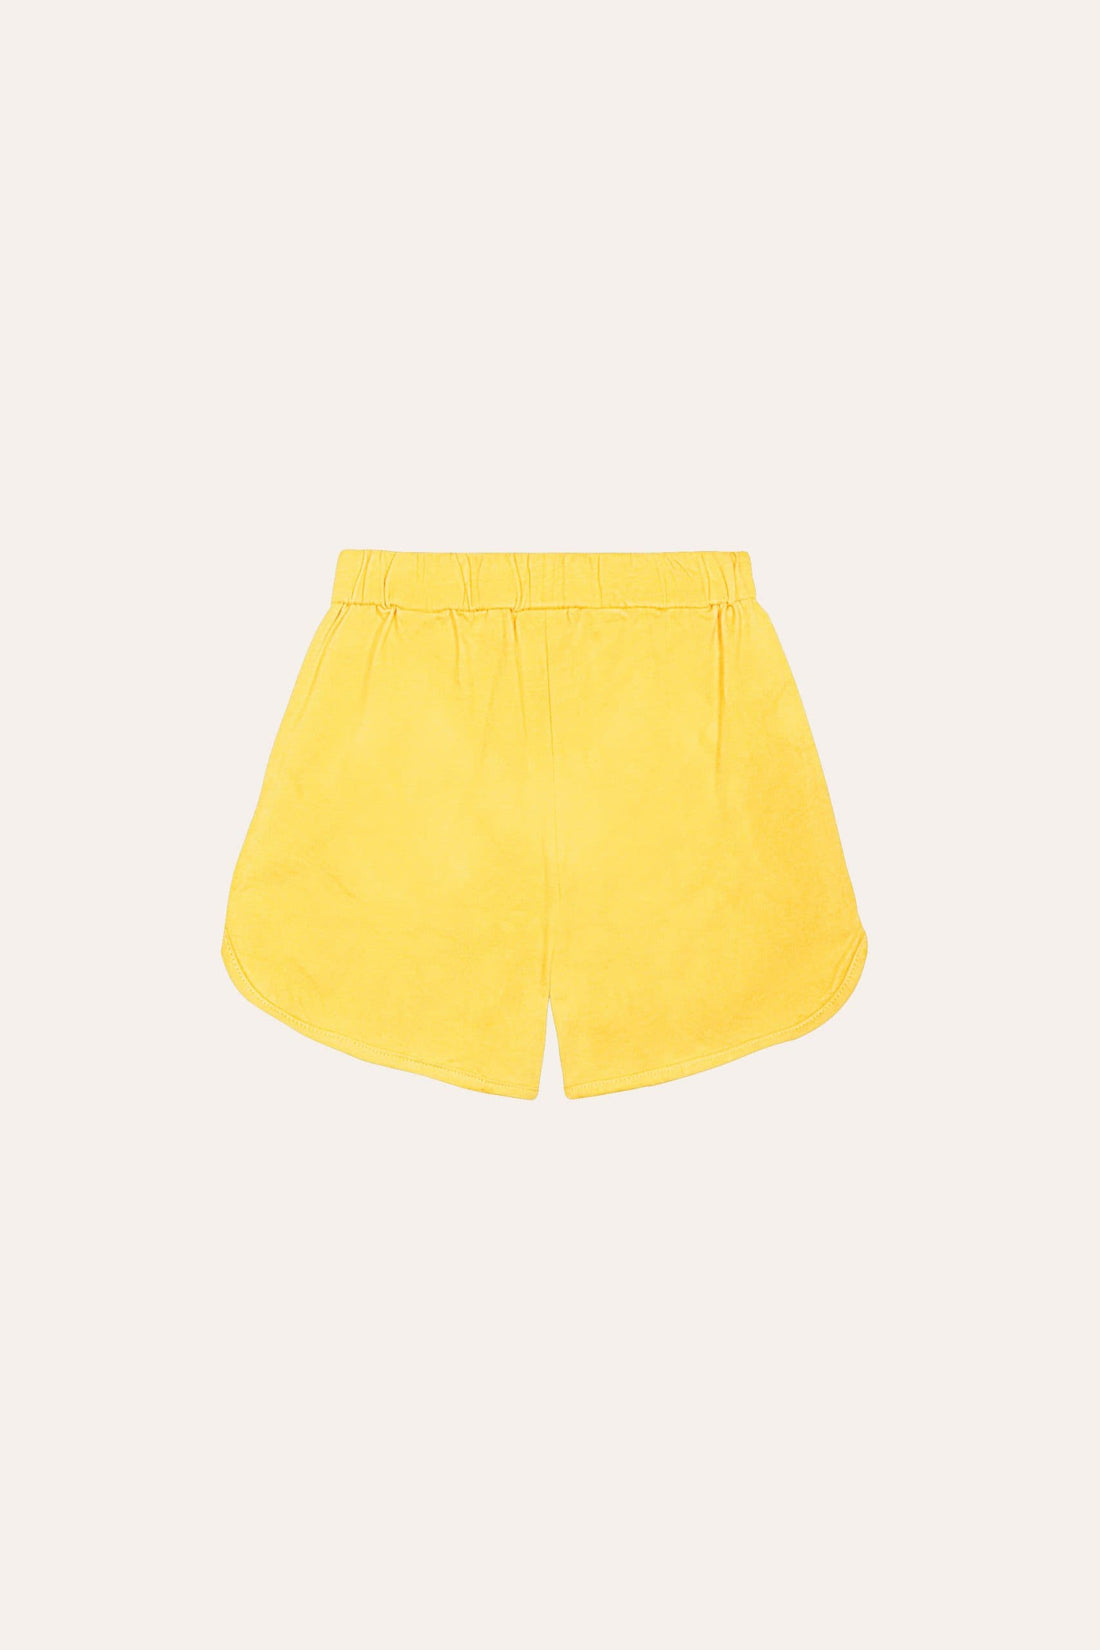 Yellow Tie Dye Shorts - Parkette.